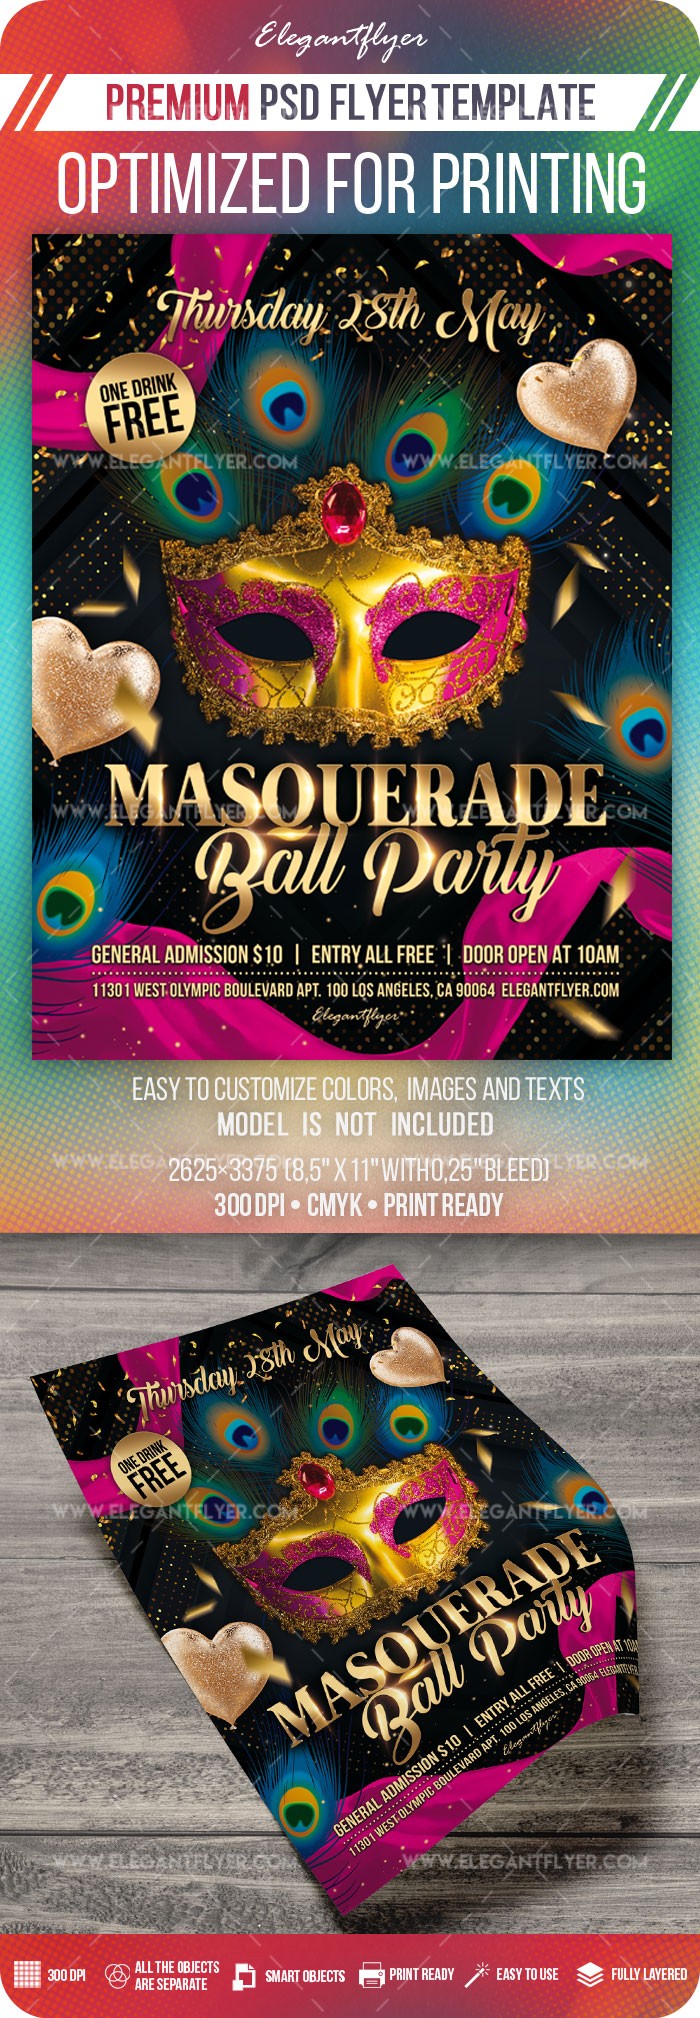 Masquerade Ball Party by ElegantFlyer